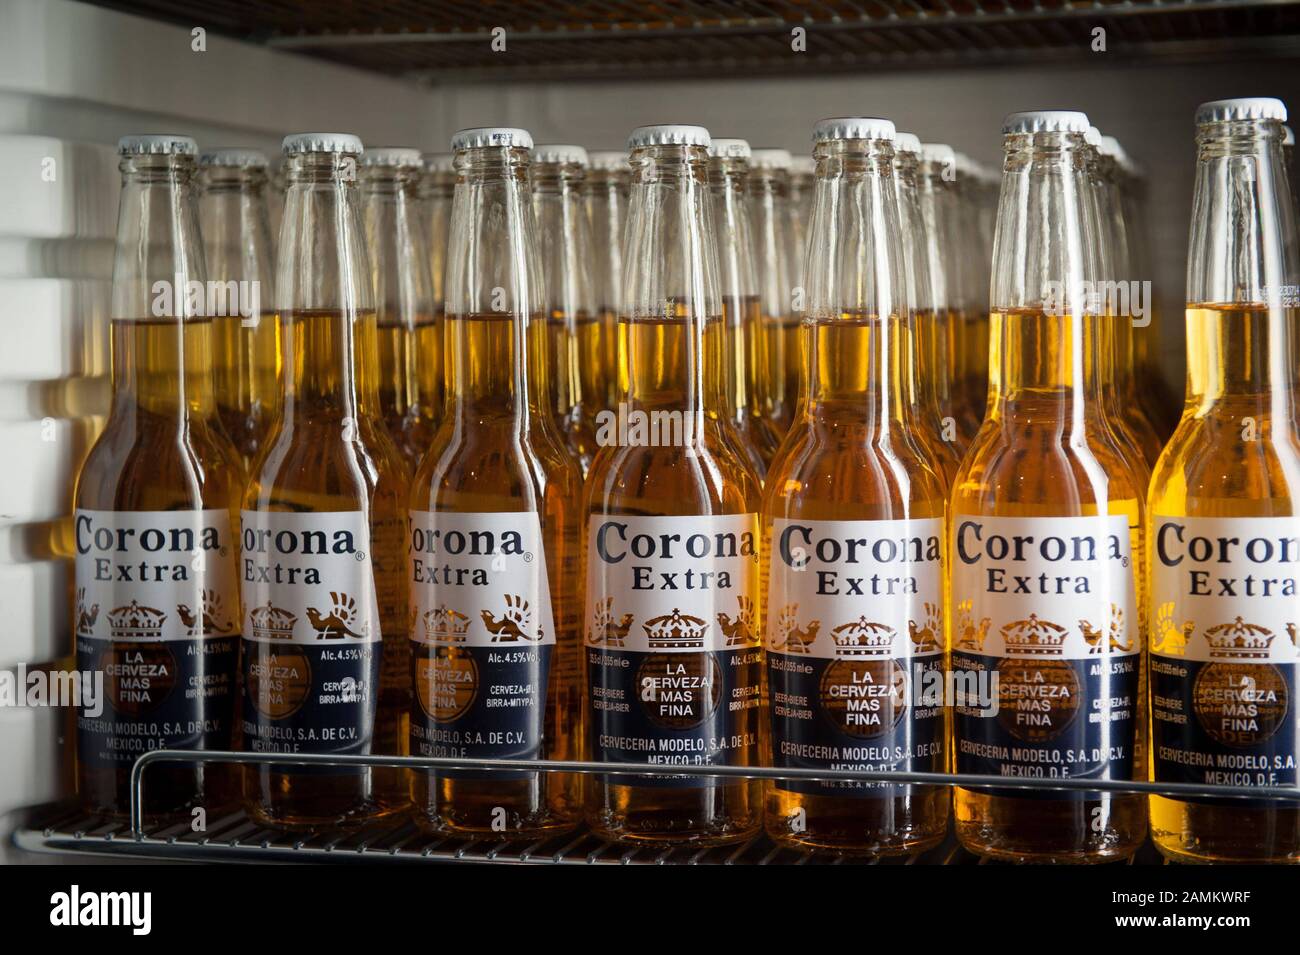 Kühlschrank mit "Corona"-Bierflaschen in der mexikanischen Imbissbar  "Condesa Burritos" in der Münchner Freiheit 6. [Automatisierte Übersetzung]  Stockfotografie - Alamy